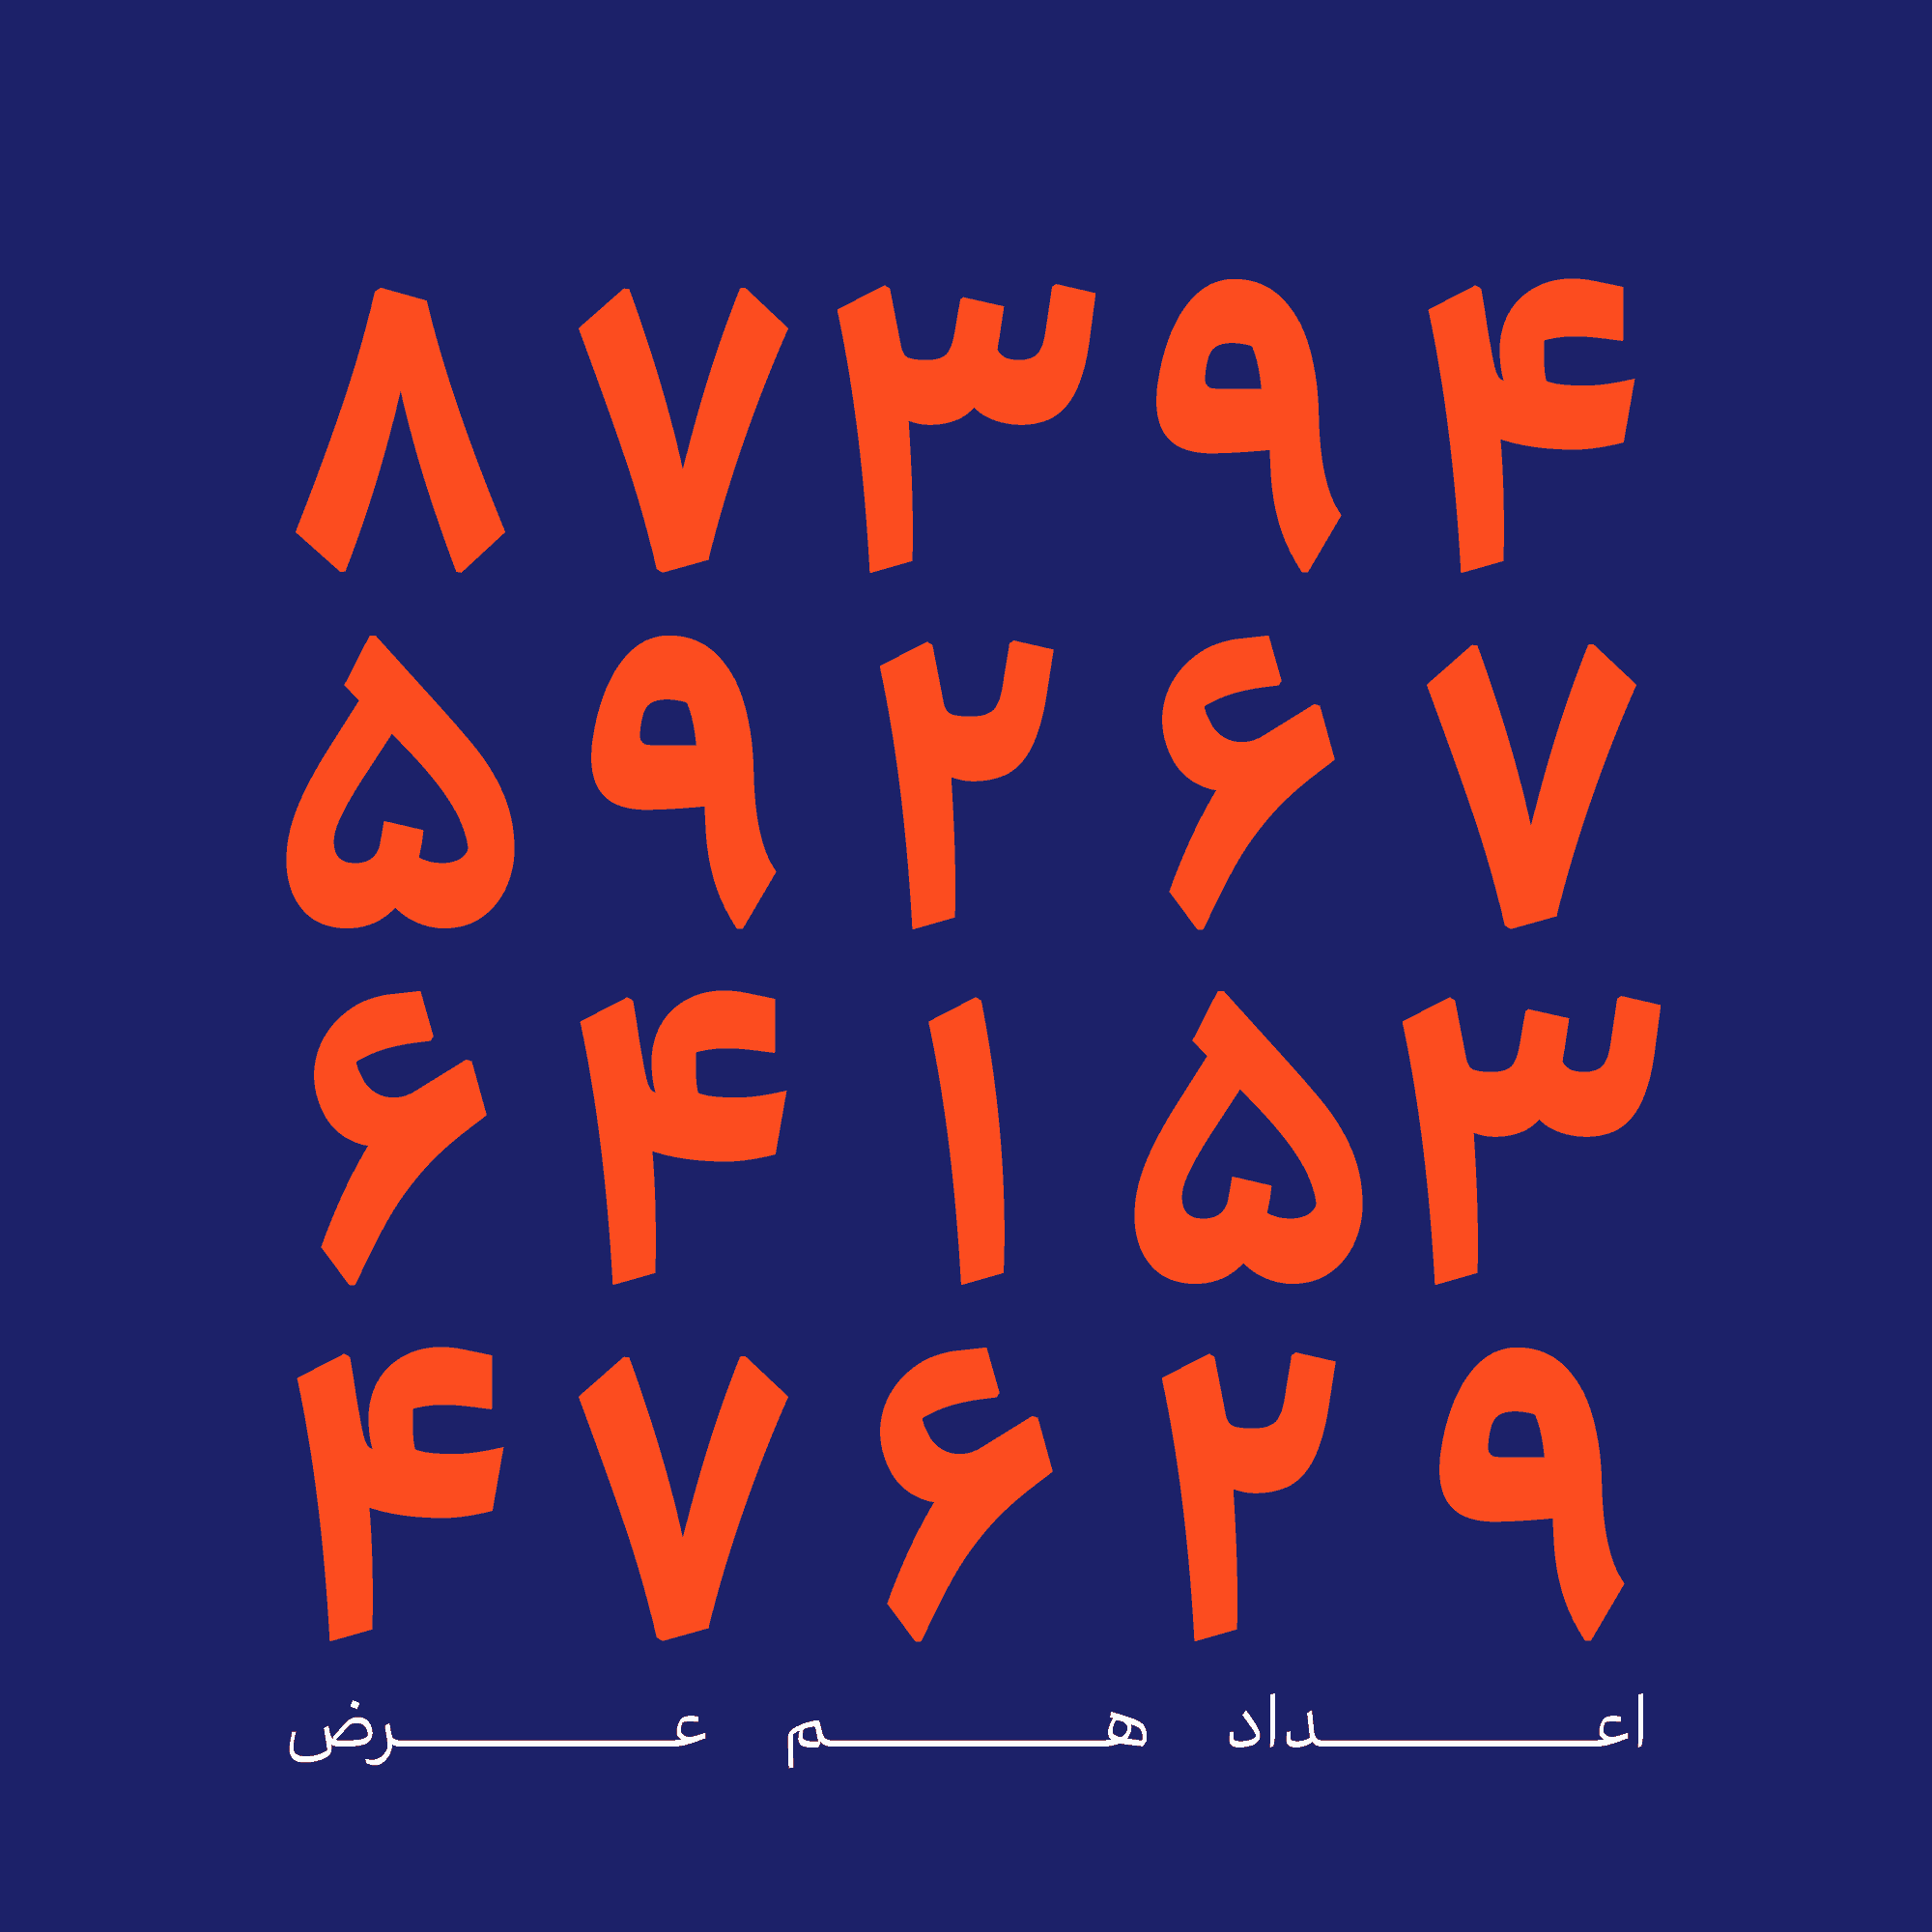 فونت آریا aria font